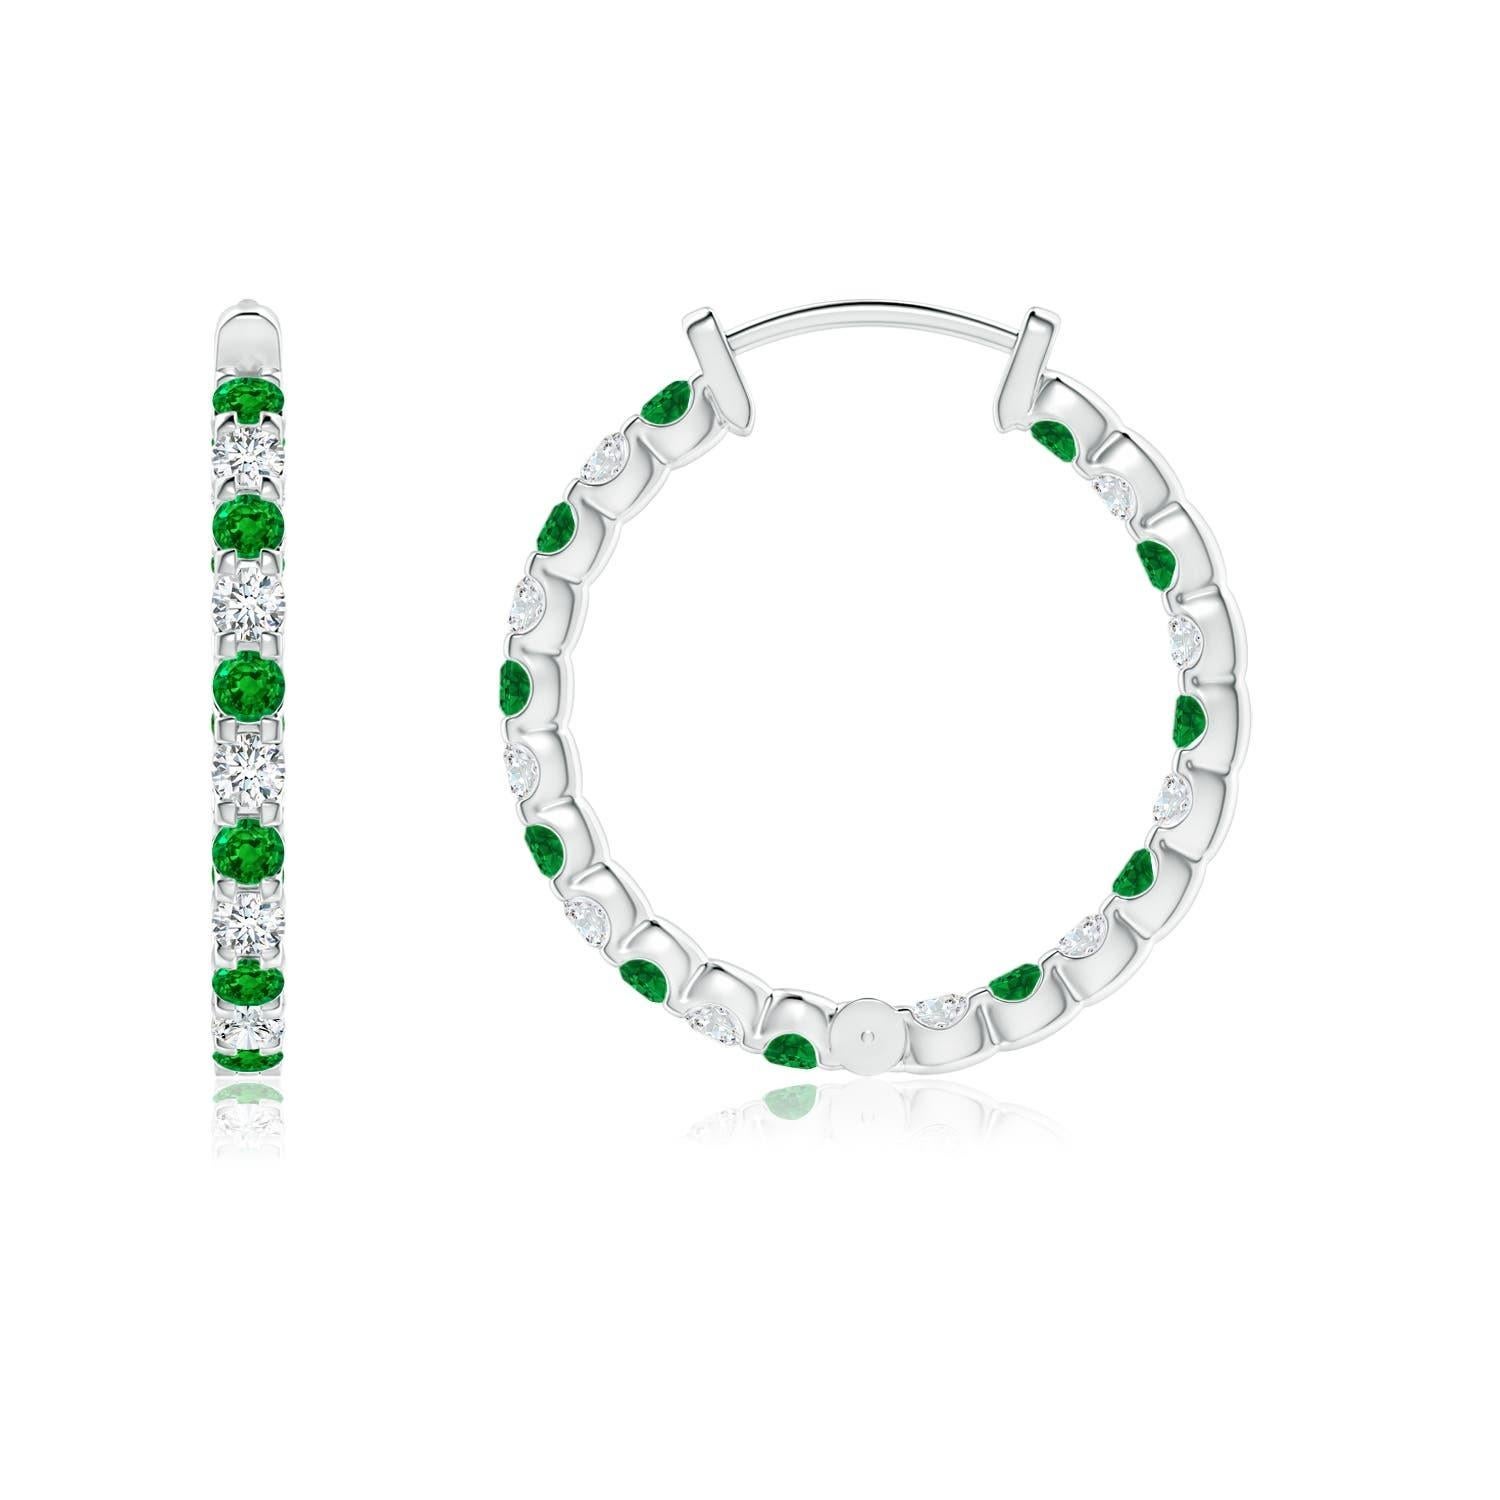 Diese atemberaubenden Ohrringe sind abwechselnd mit üppigen grünen Smaragden und Brillanten in Zackenfassung besetzt. Die funkelnden Edelsteine sind sowohl auf der Außenseite als auch auf der Innenseite dieser 14-karätigen Weißgoldreifen verziert